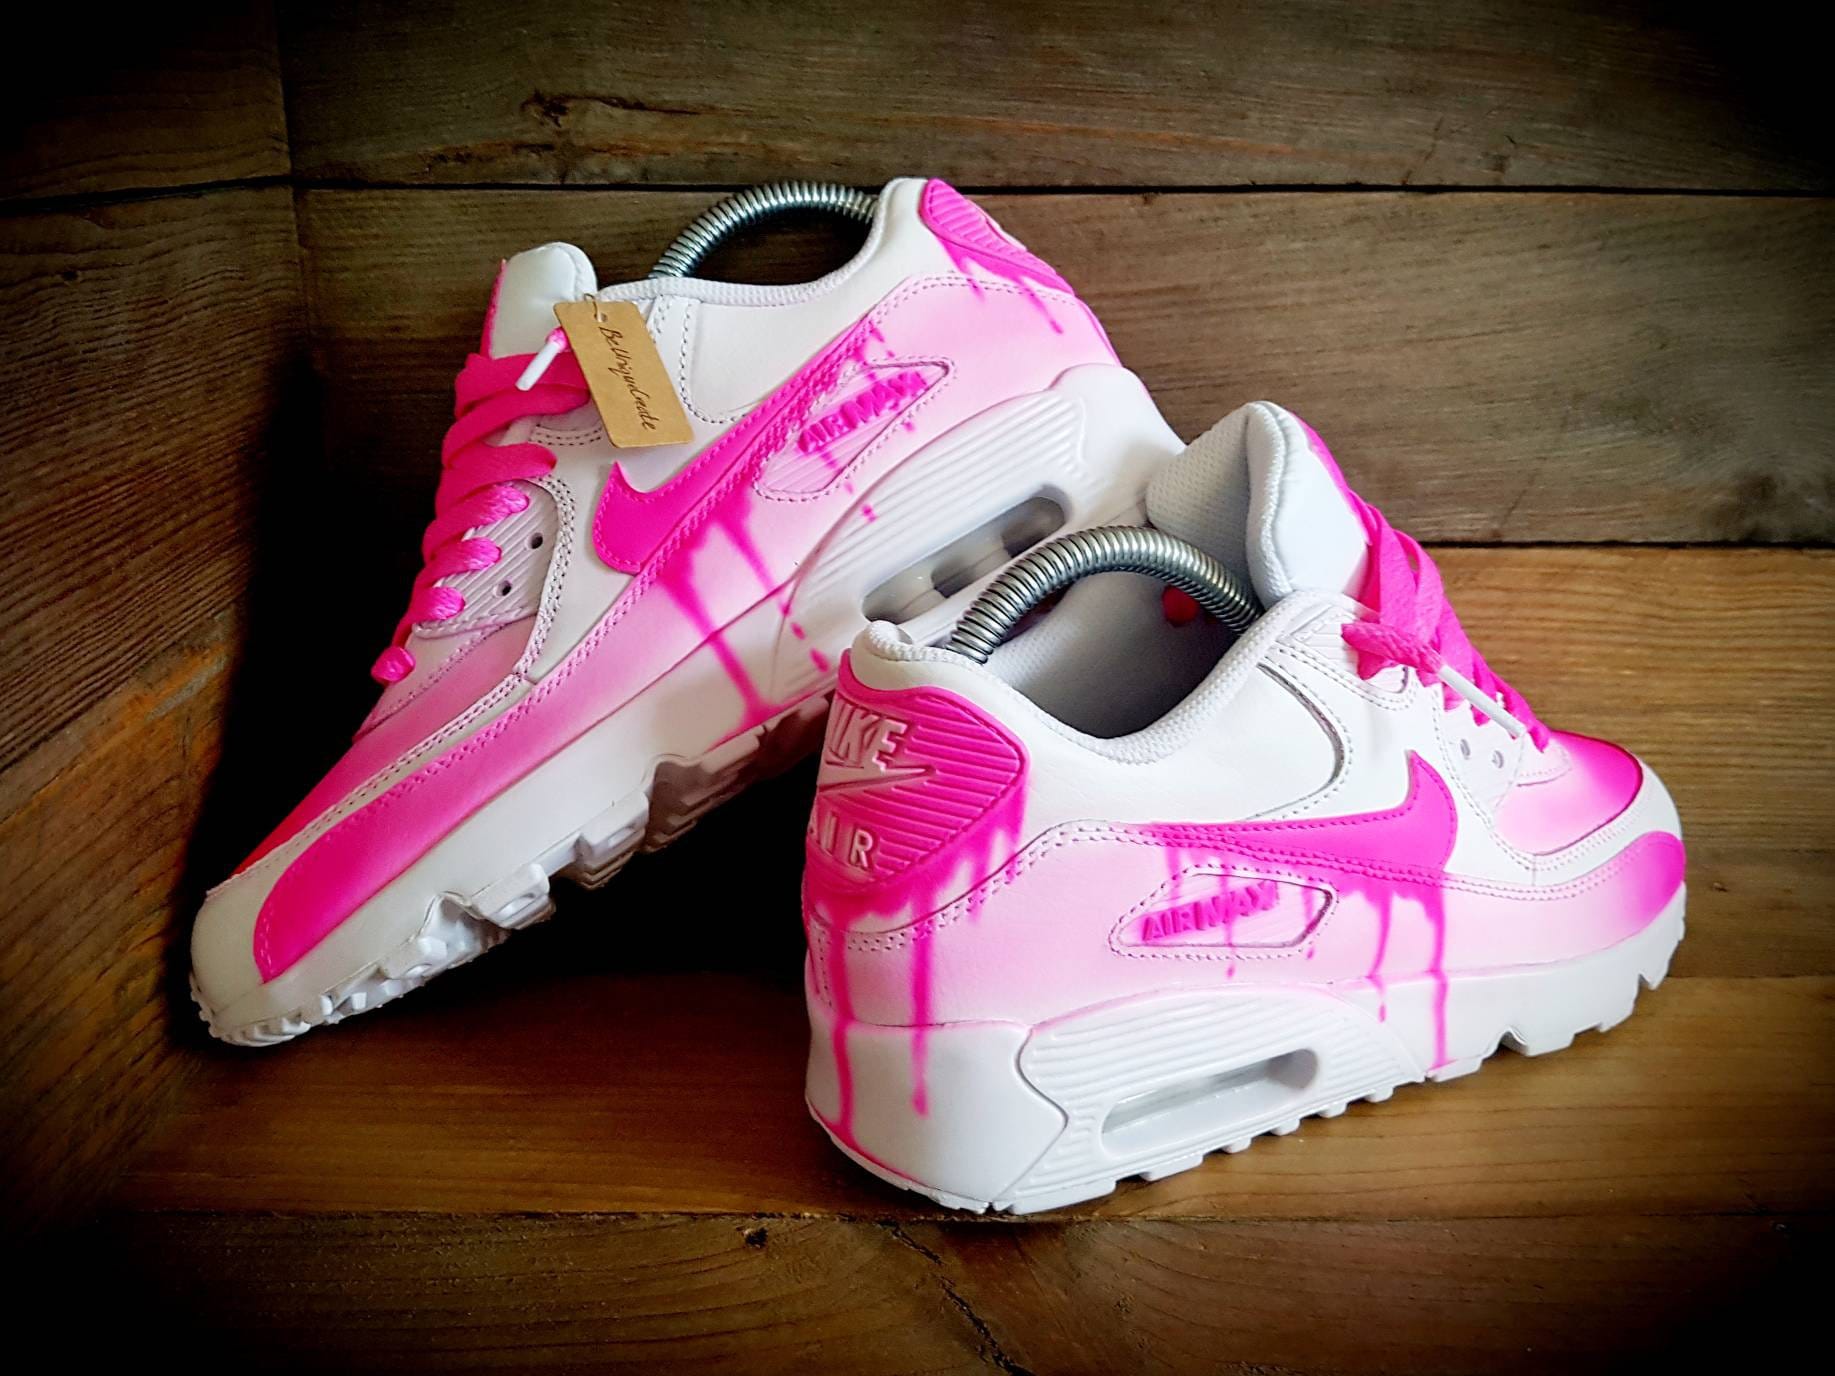 Nike Air Max 95 By You Custom Women's Shoe